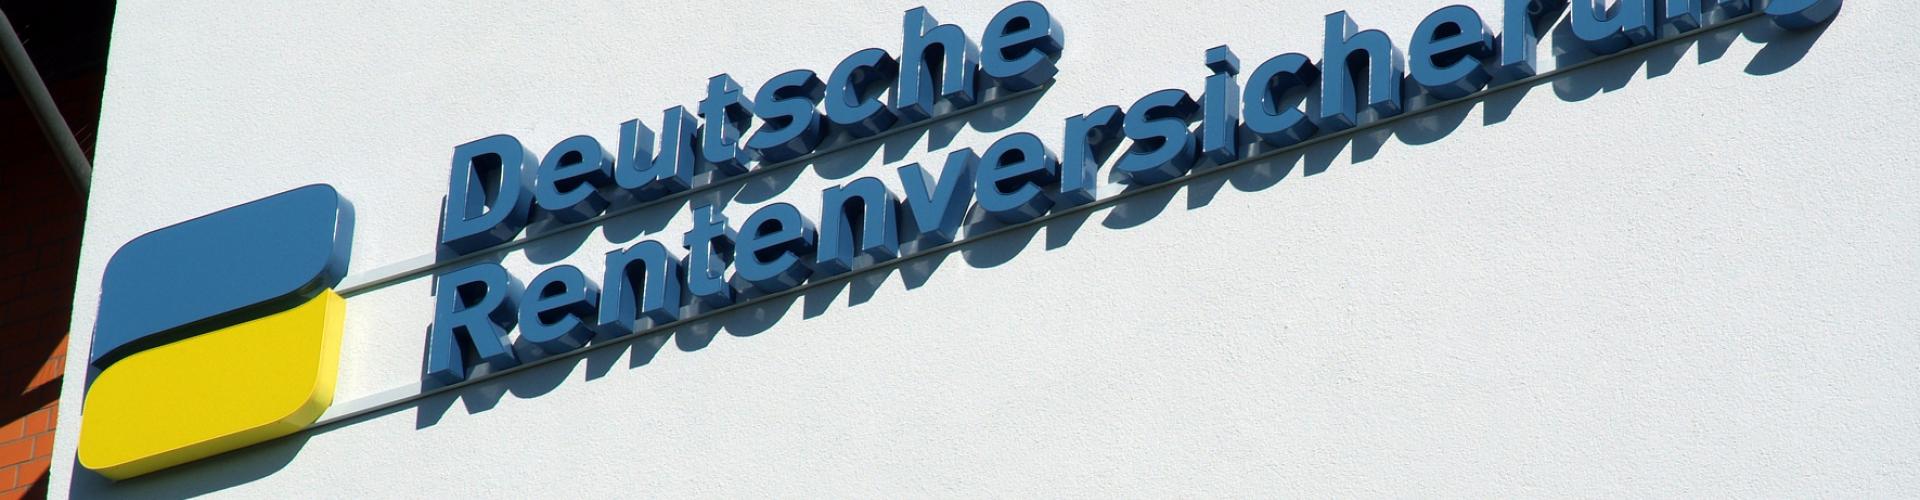 Deutsche Rentenversicherung Rheinland cover